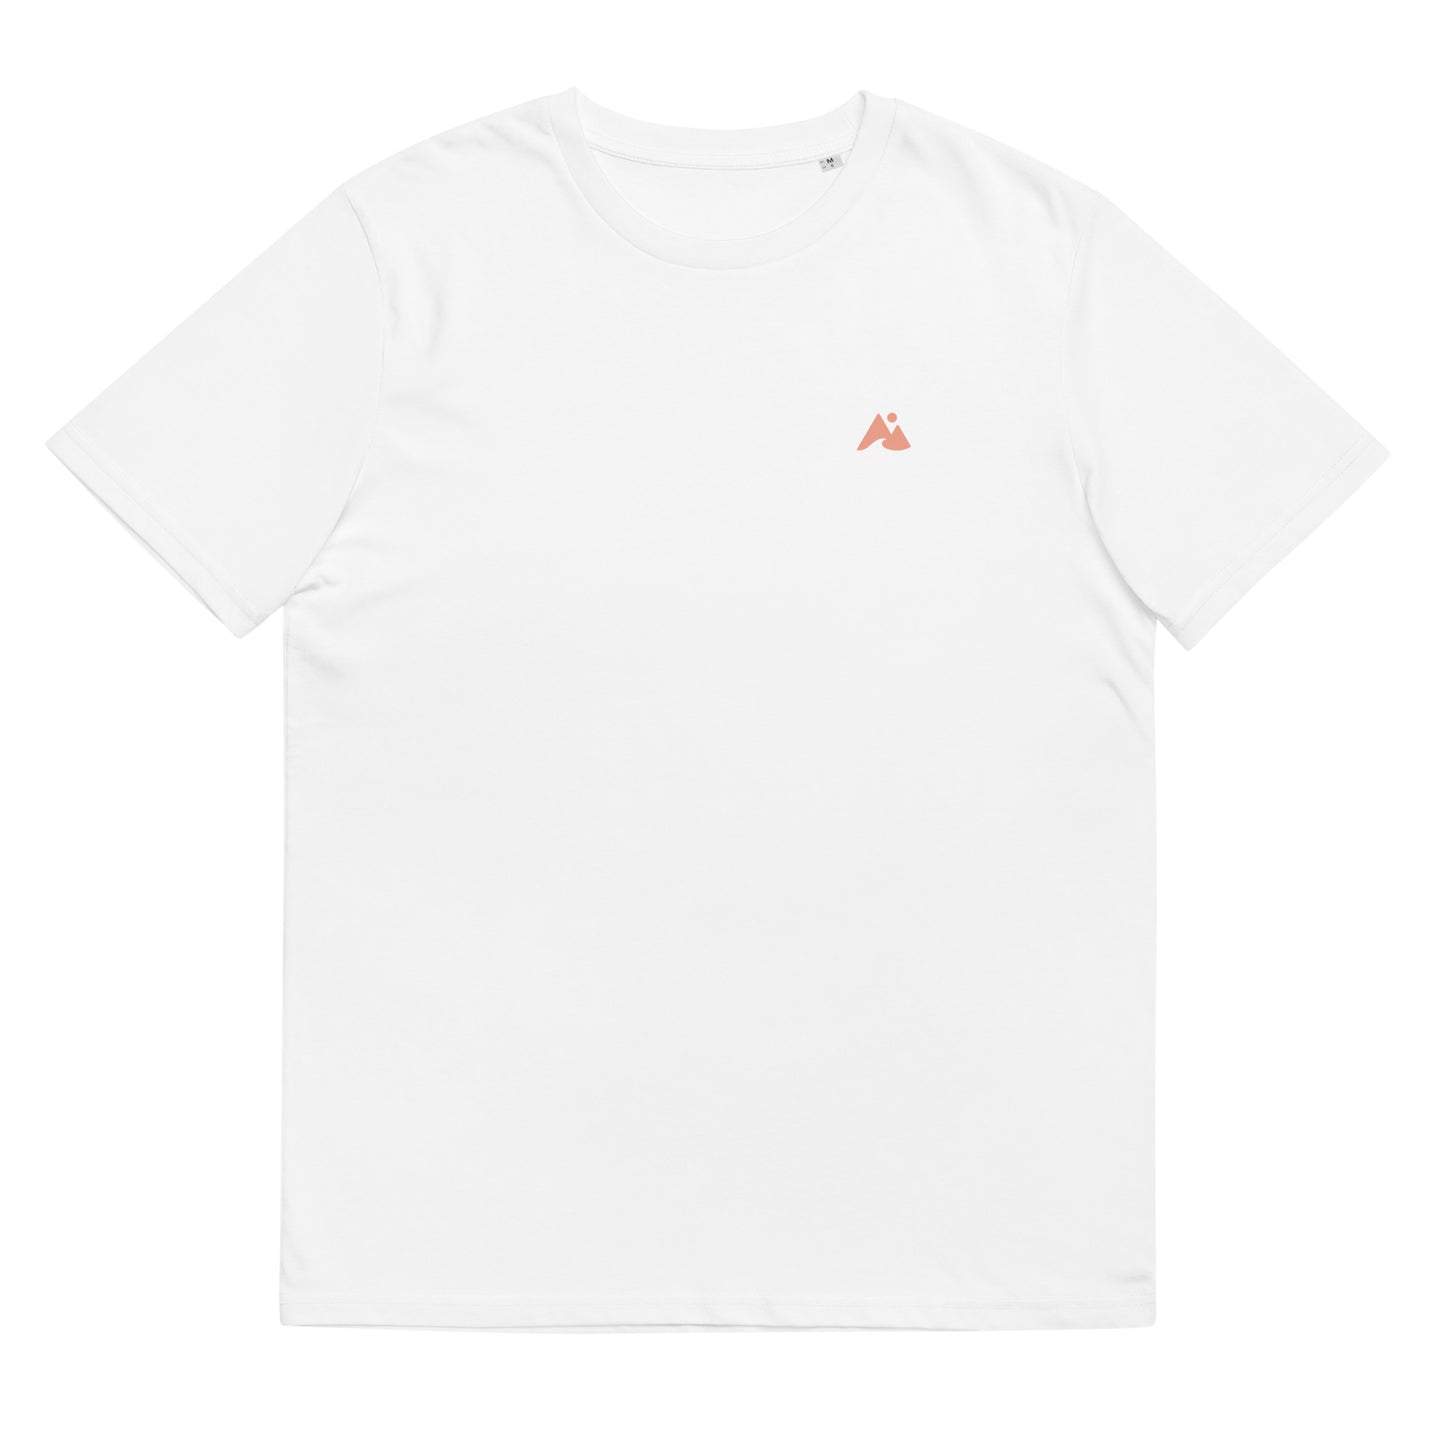 T-shirt unisex coton bio carreaux/surf Waïloa